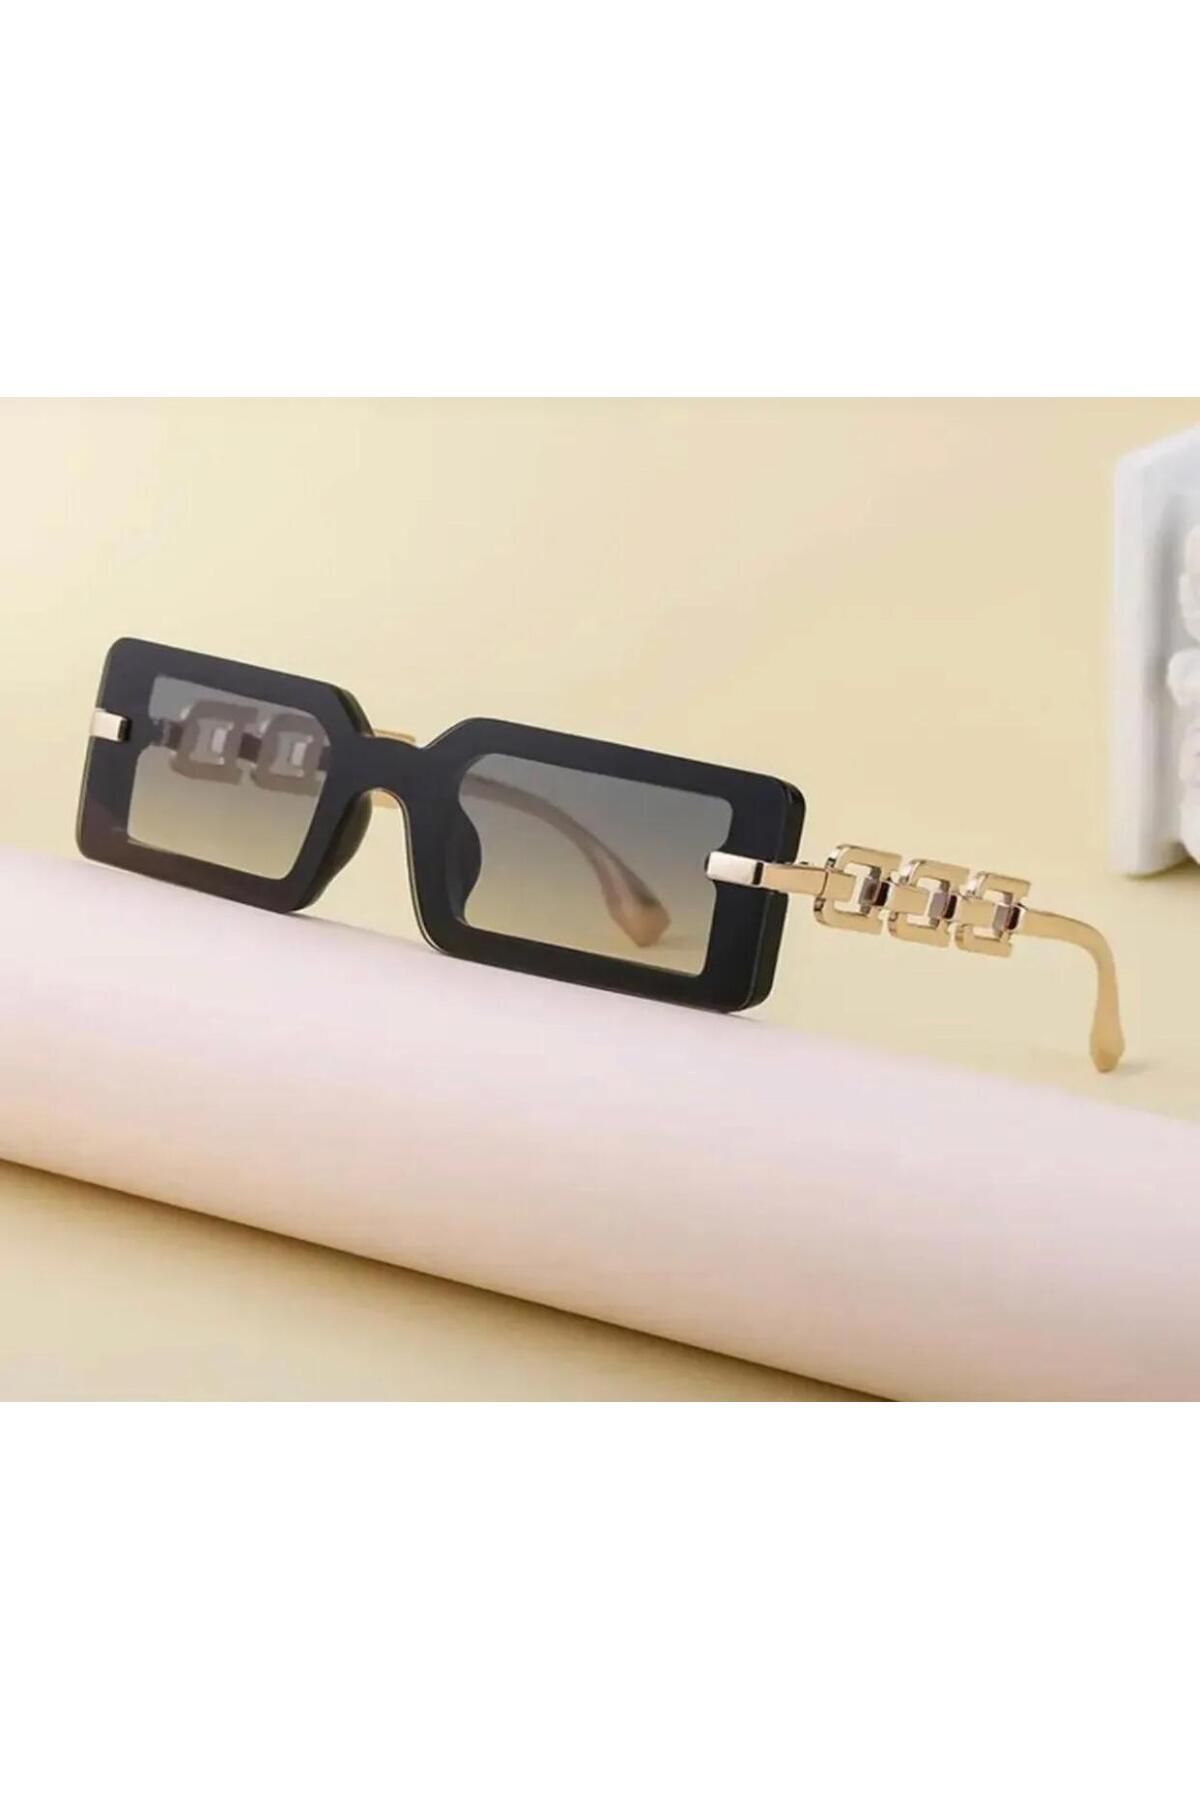 POLACOO güneş gözlüğü lüx ürün uv 400 şık tasarım güneş gözlüğü